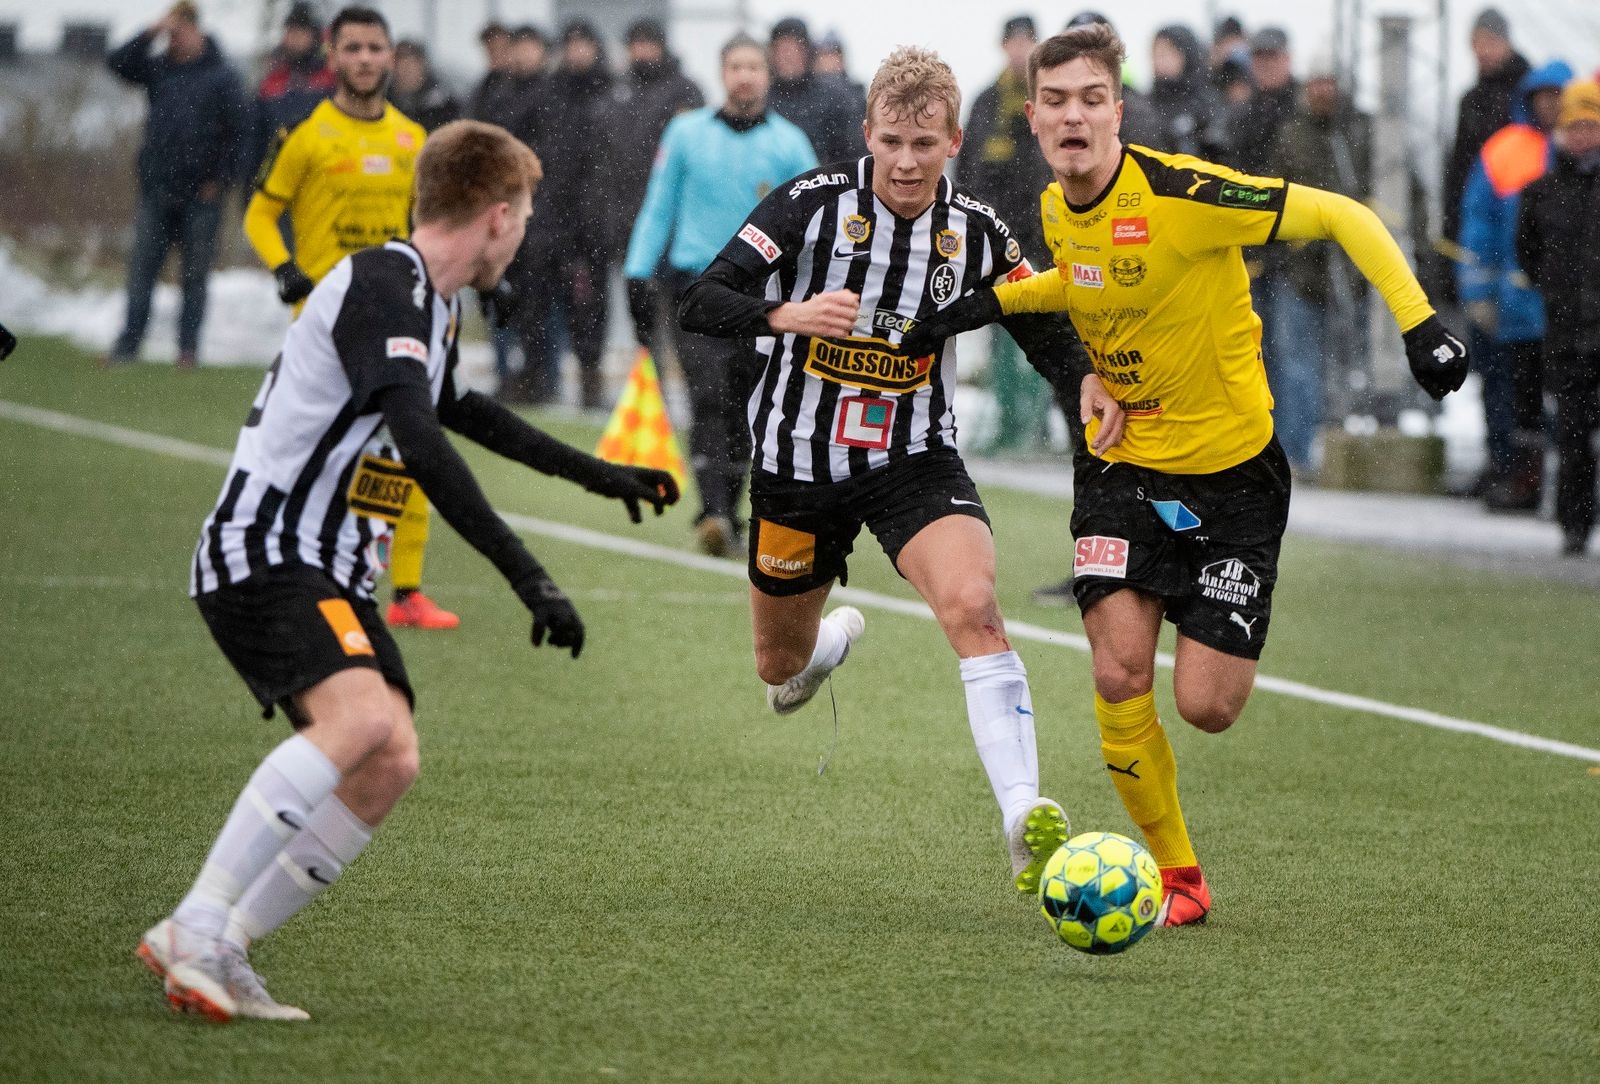 Träningsmatch Mjällby AIF - Landskrona BOIS
Paule Vagic